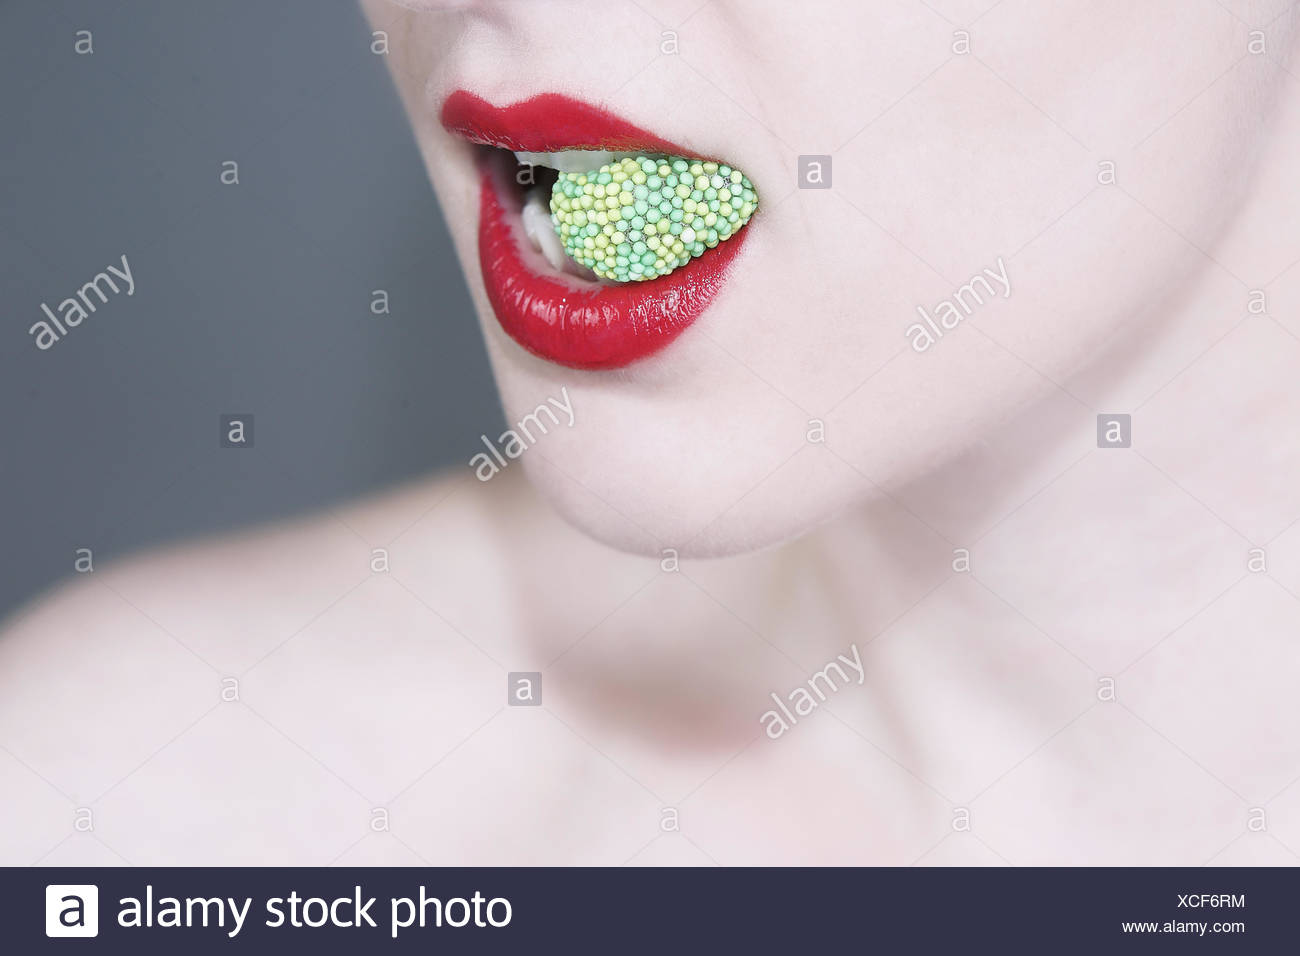 Die lippe beißen beim essen auf 💉 Lippenbeißen: